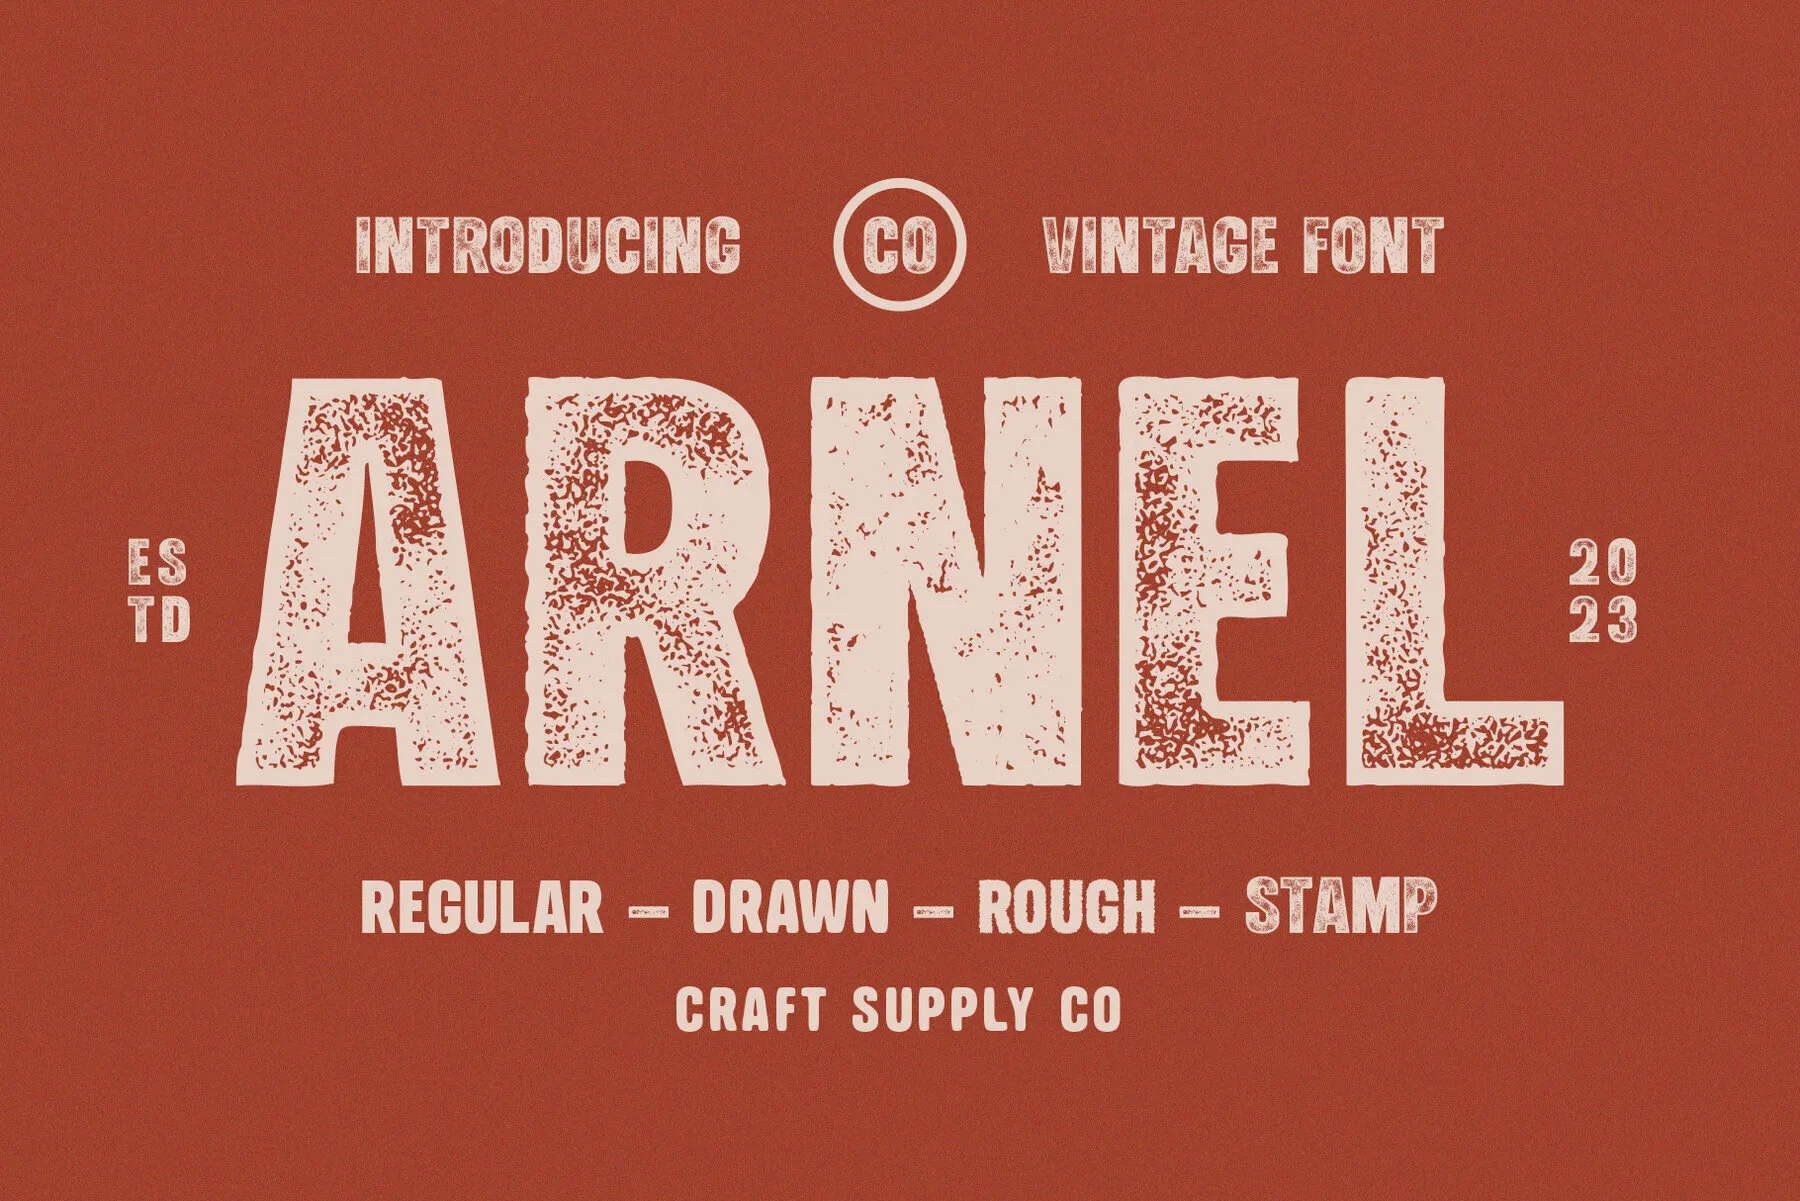 Arnel Vintage